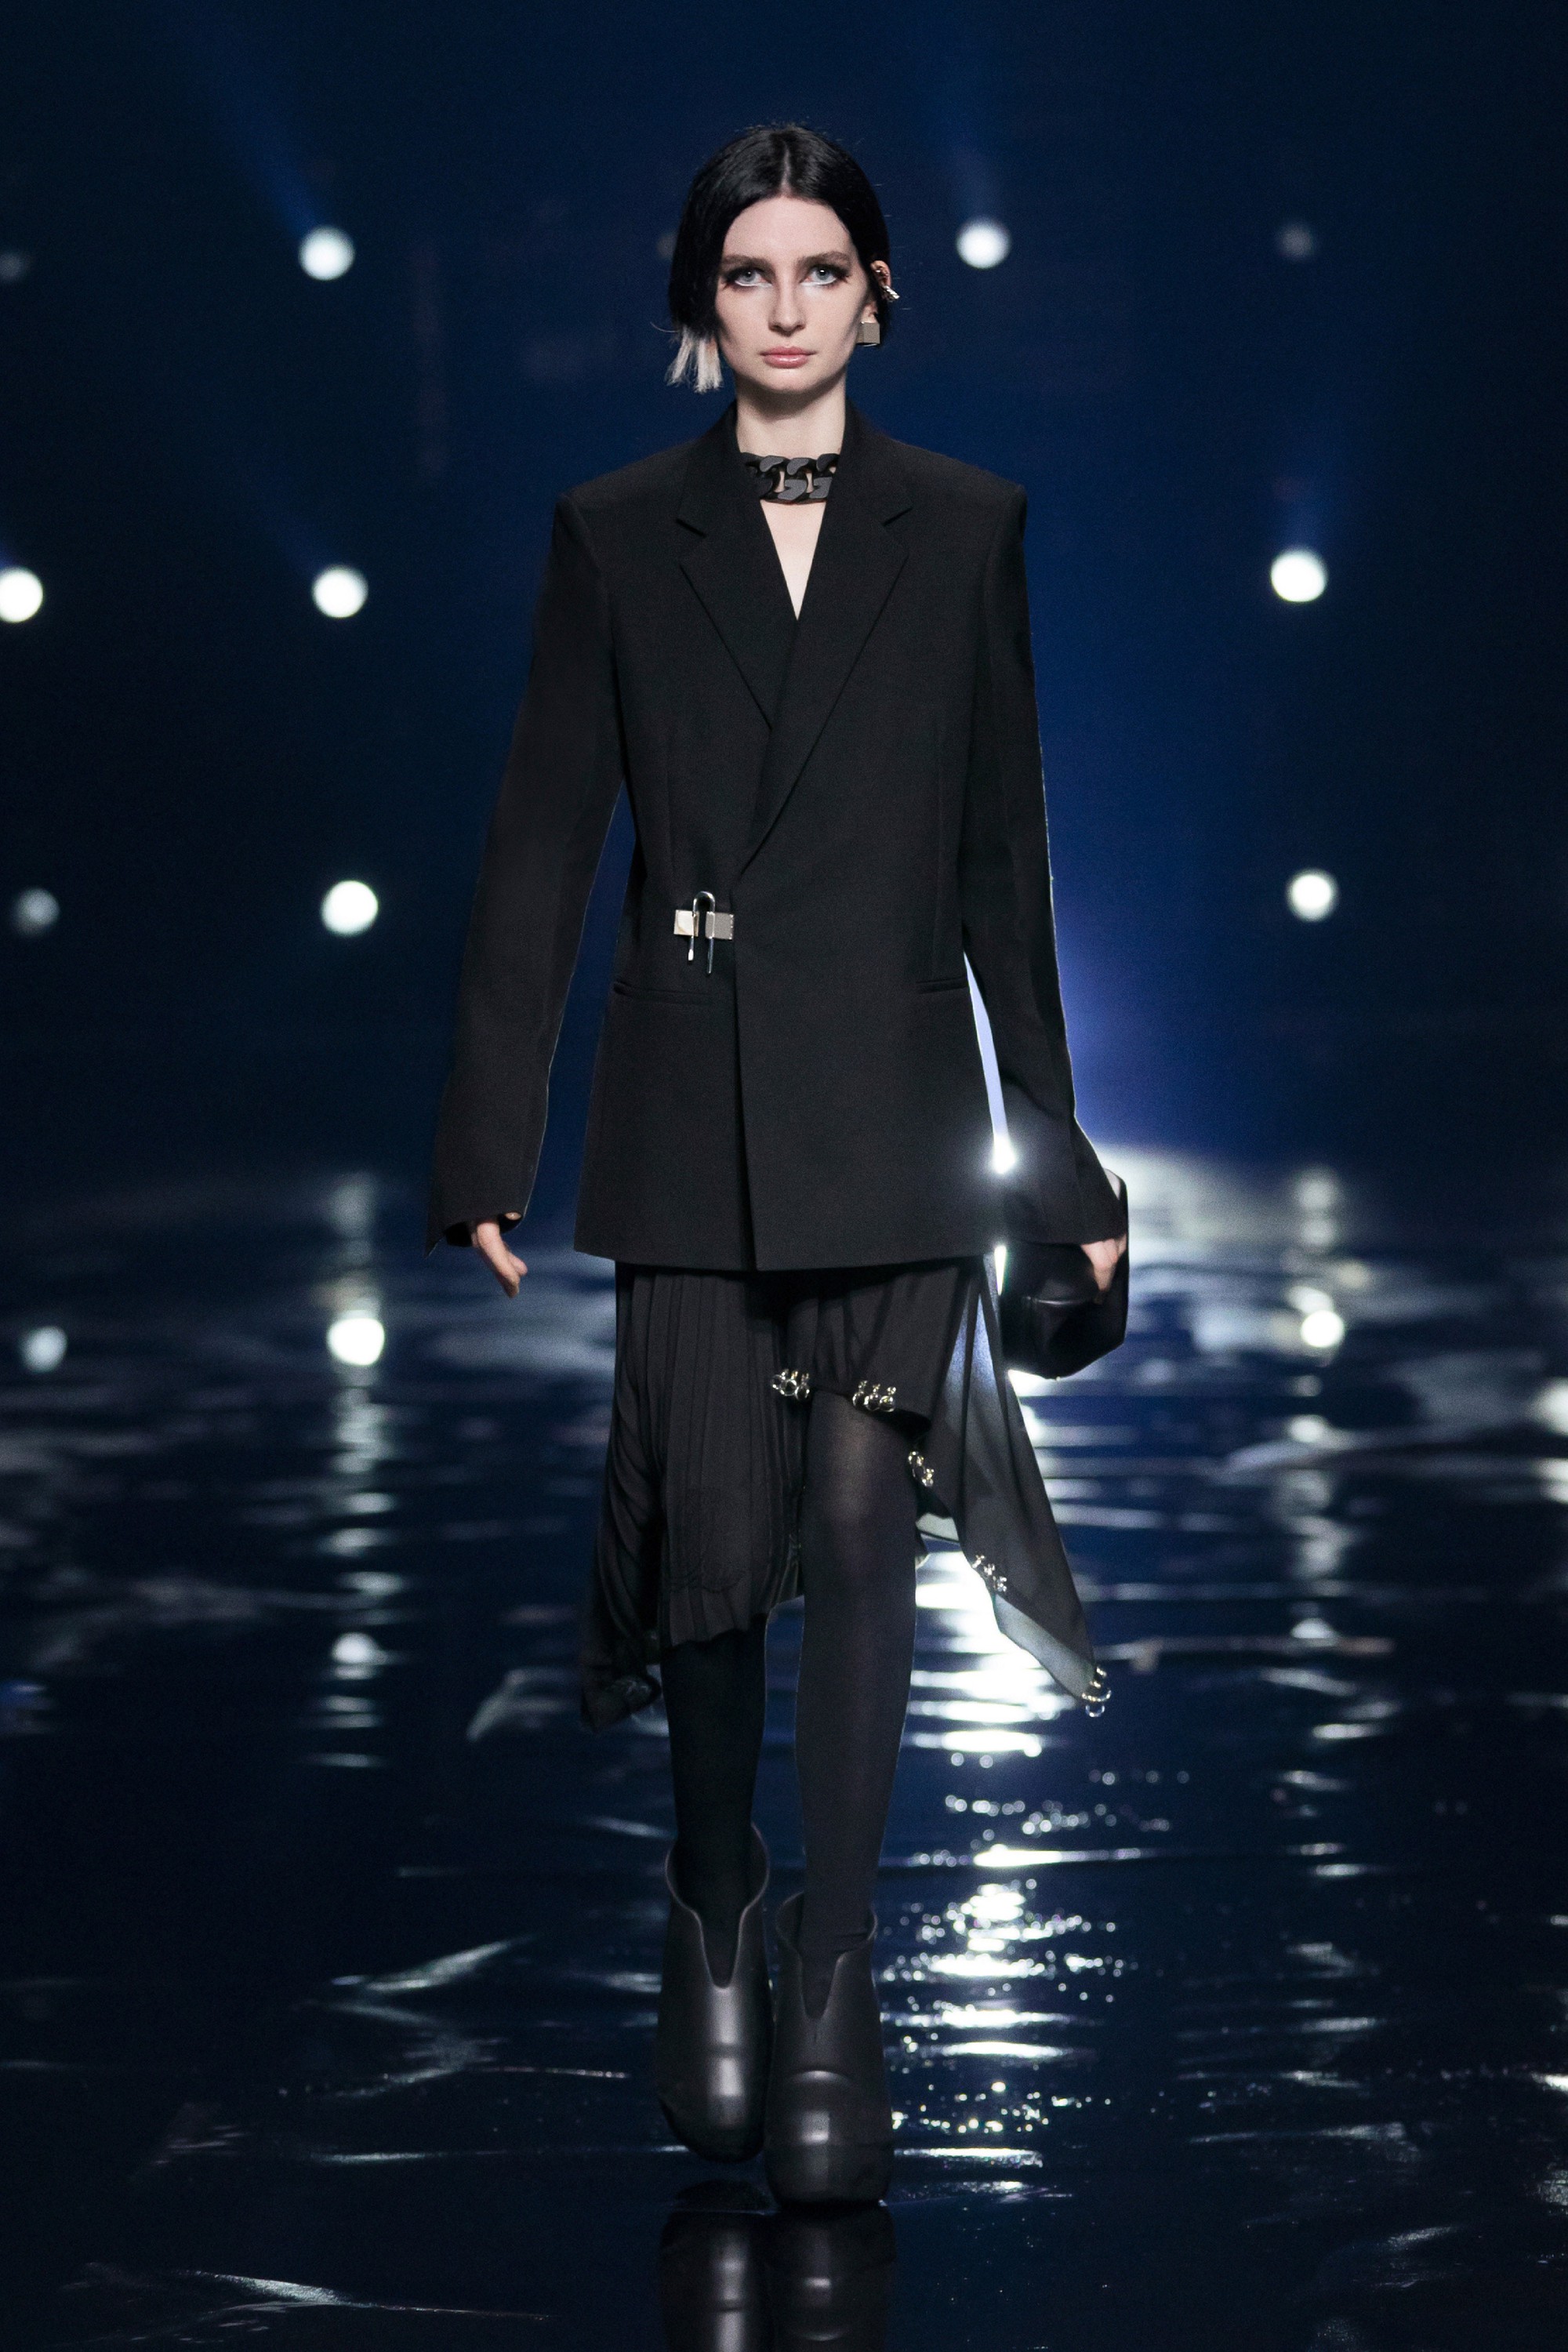 Loạt thiết kế lộ ngực trần gây chú ý tại show diễn của Givenchy - Ảnh 1.